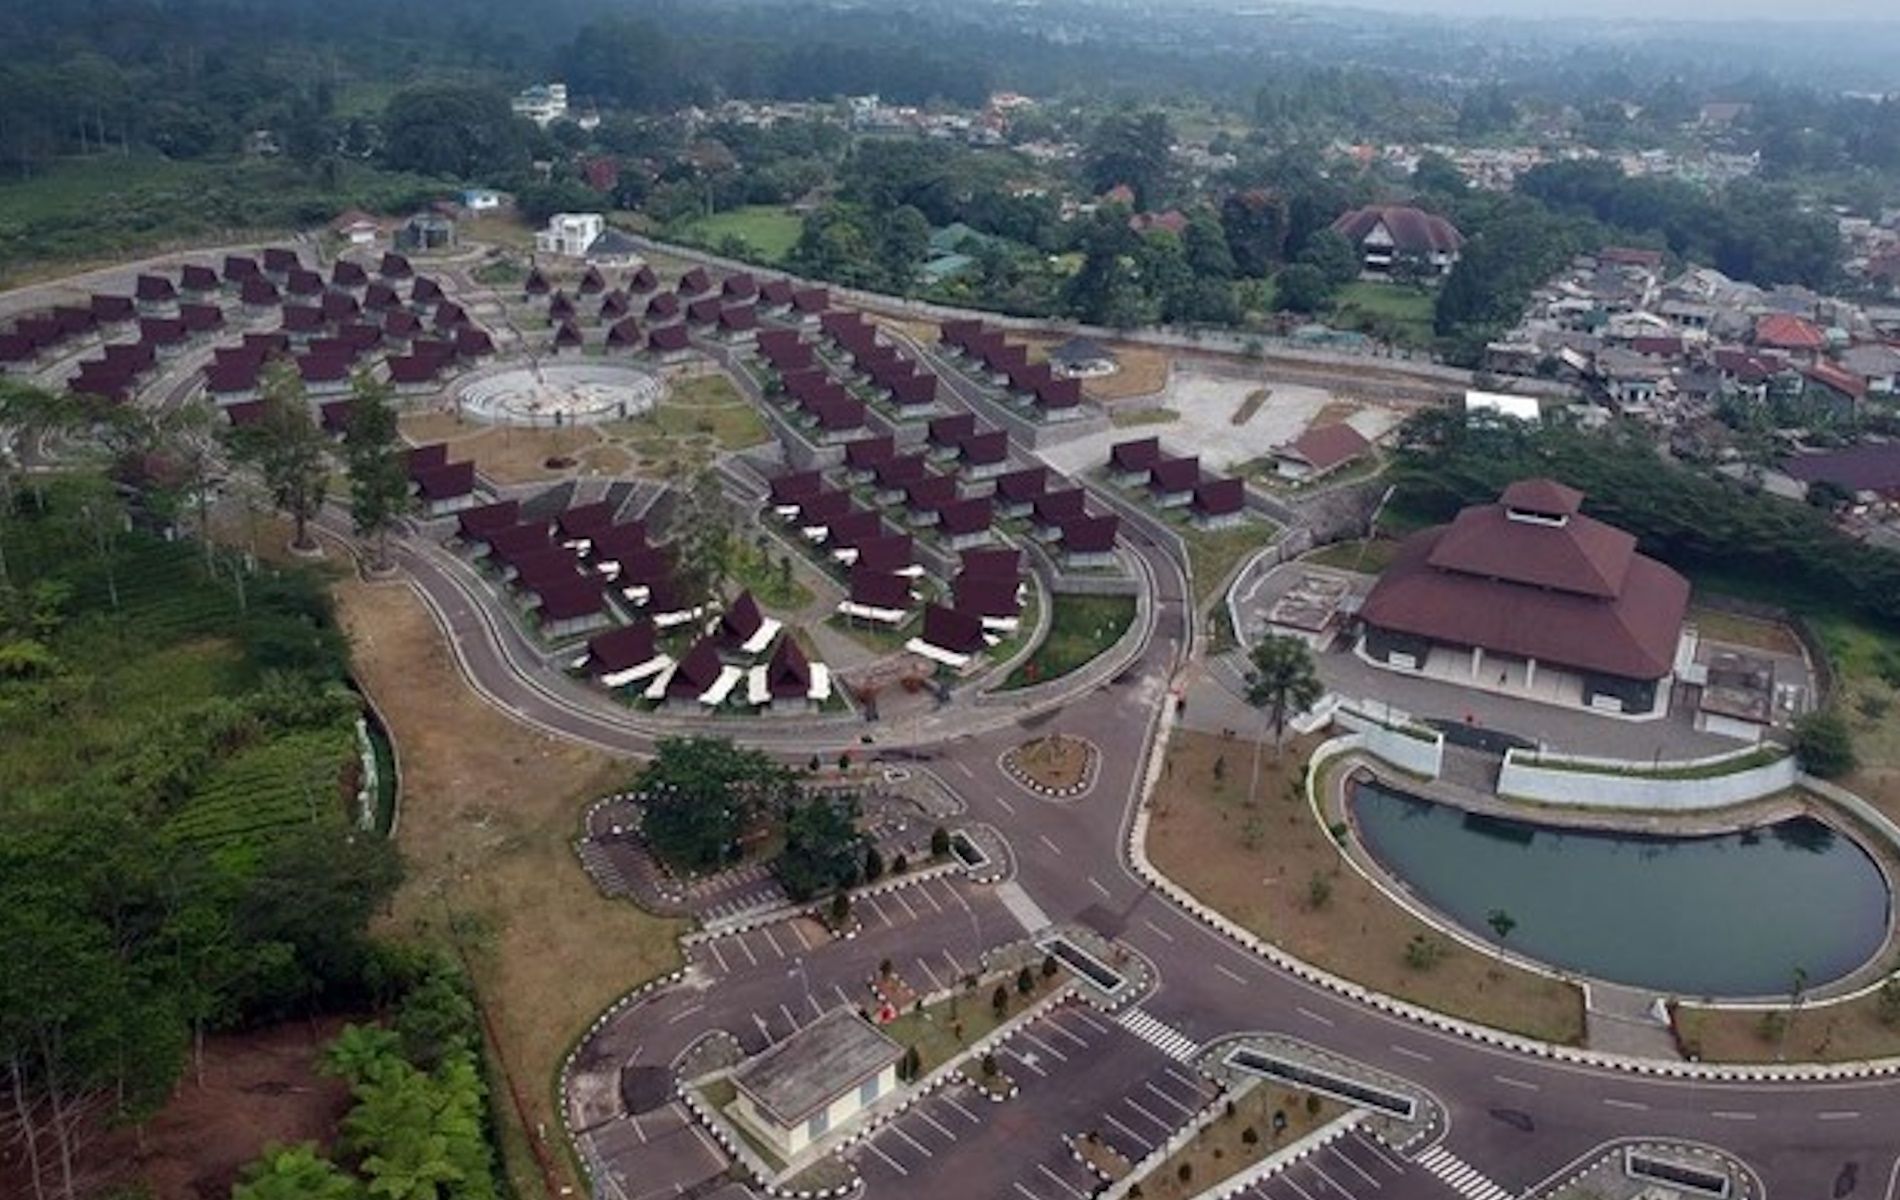 Pemkab Bogor terus berupaya menjadikan Rest Area Gunung Mas Puncak Bogor agar bisa ramai dikunjungi wisatawan yang berlibur di kawasan Puncak dengan cara menggratiskan biaya parkir kendaraan.